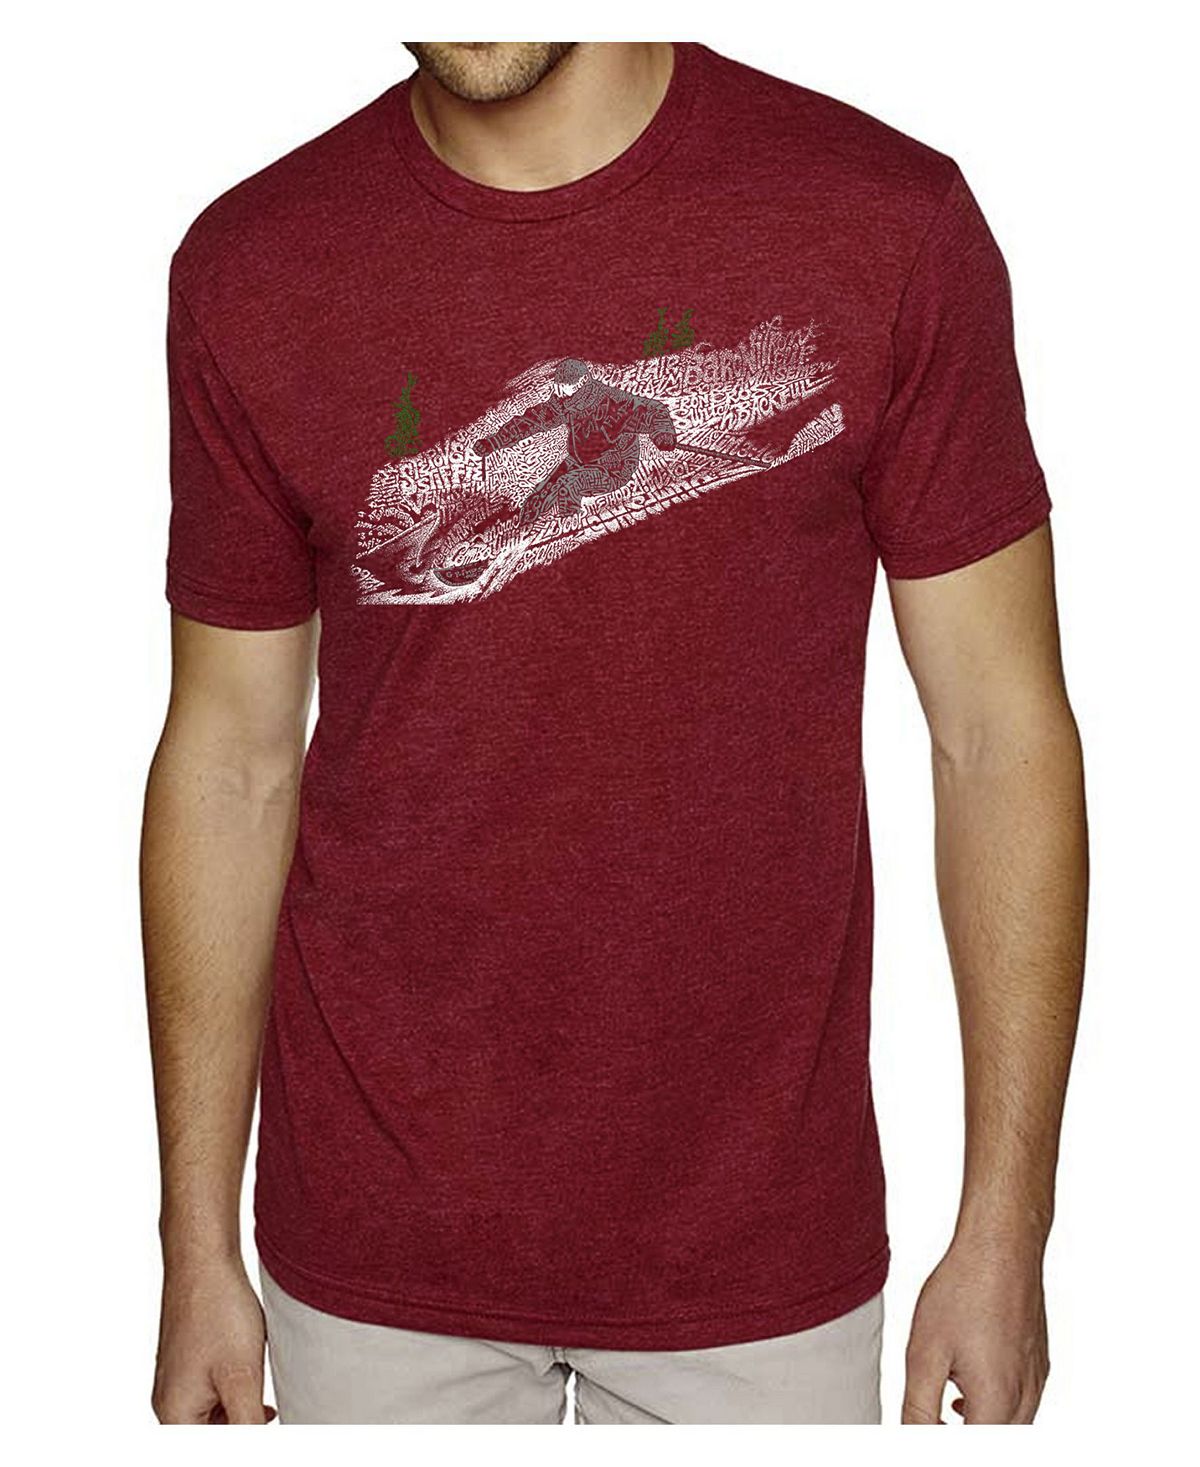 Мужская футболка premium word art - лыжи LA Pop Art мужская футболка premium word art tyrannosaurus rex la pop art